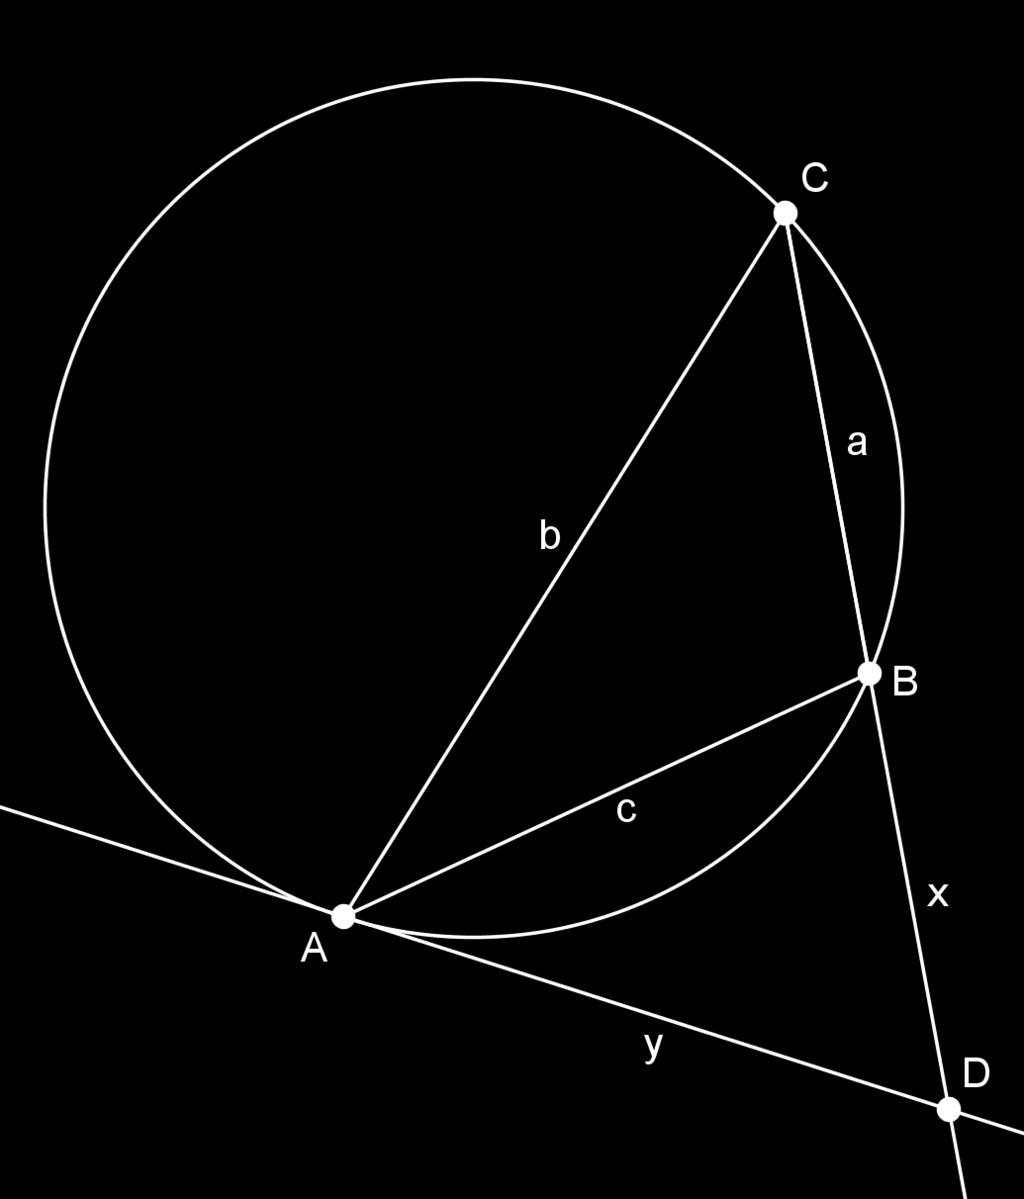 Opgave 2. Zij ABC een driehoek waarvan de zijdelengtes positieve gehele getallen zijn die paarsgewijs relatief priem zijn. De raaklijn in A aan de omgeschreven cirkel snijdt de lijn BC in D.